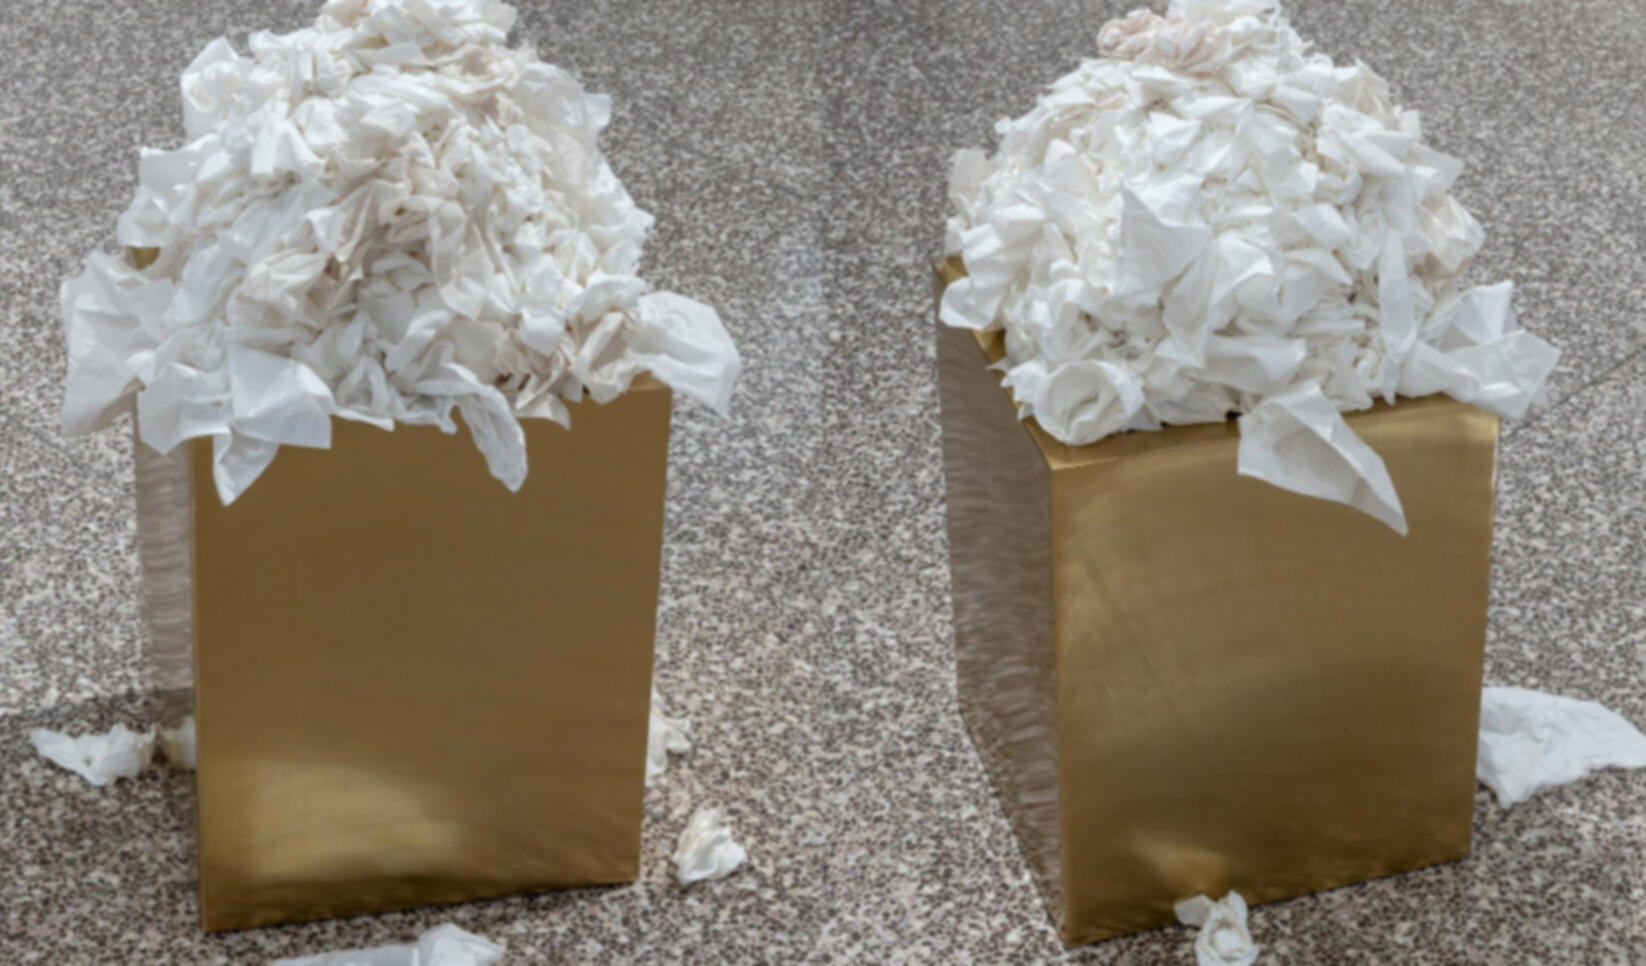 Golden pedestal covered in used tissues ; Emmett Ramstad